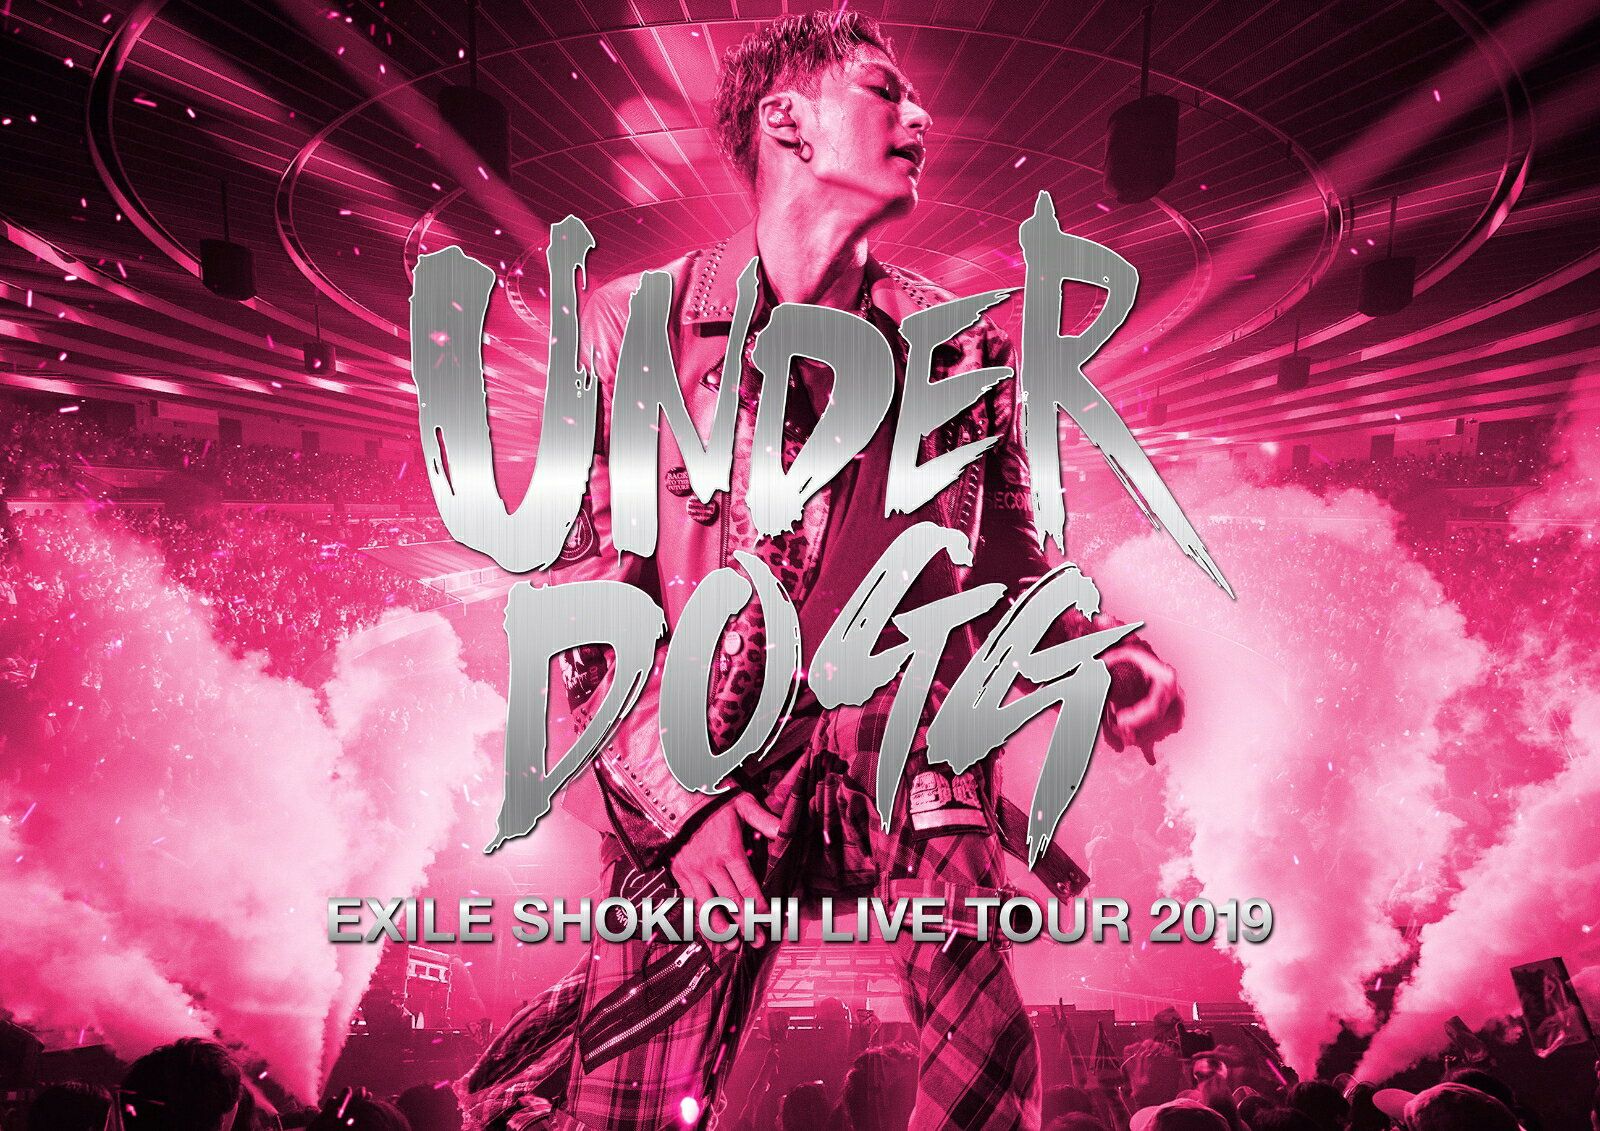 EXILE SHOKICHI LIVE TOUR 2019 UNDERDOGG [ ]